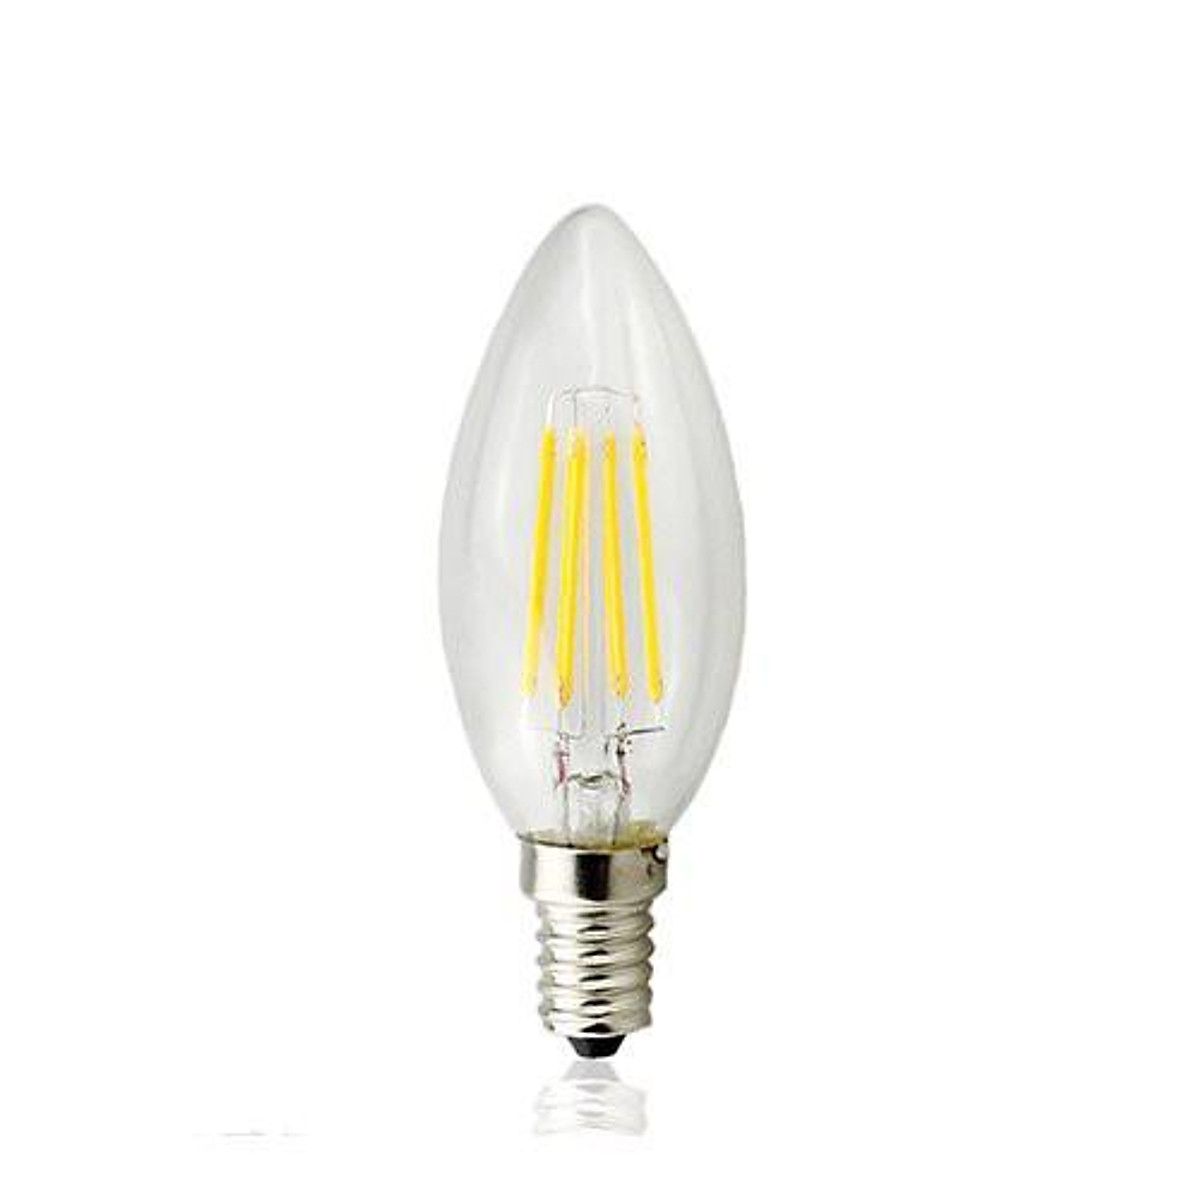 Bóng đèn LED Edison C35 ánh sáng vàng hình quả nhót - Linh kiện đèn